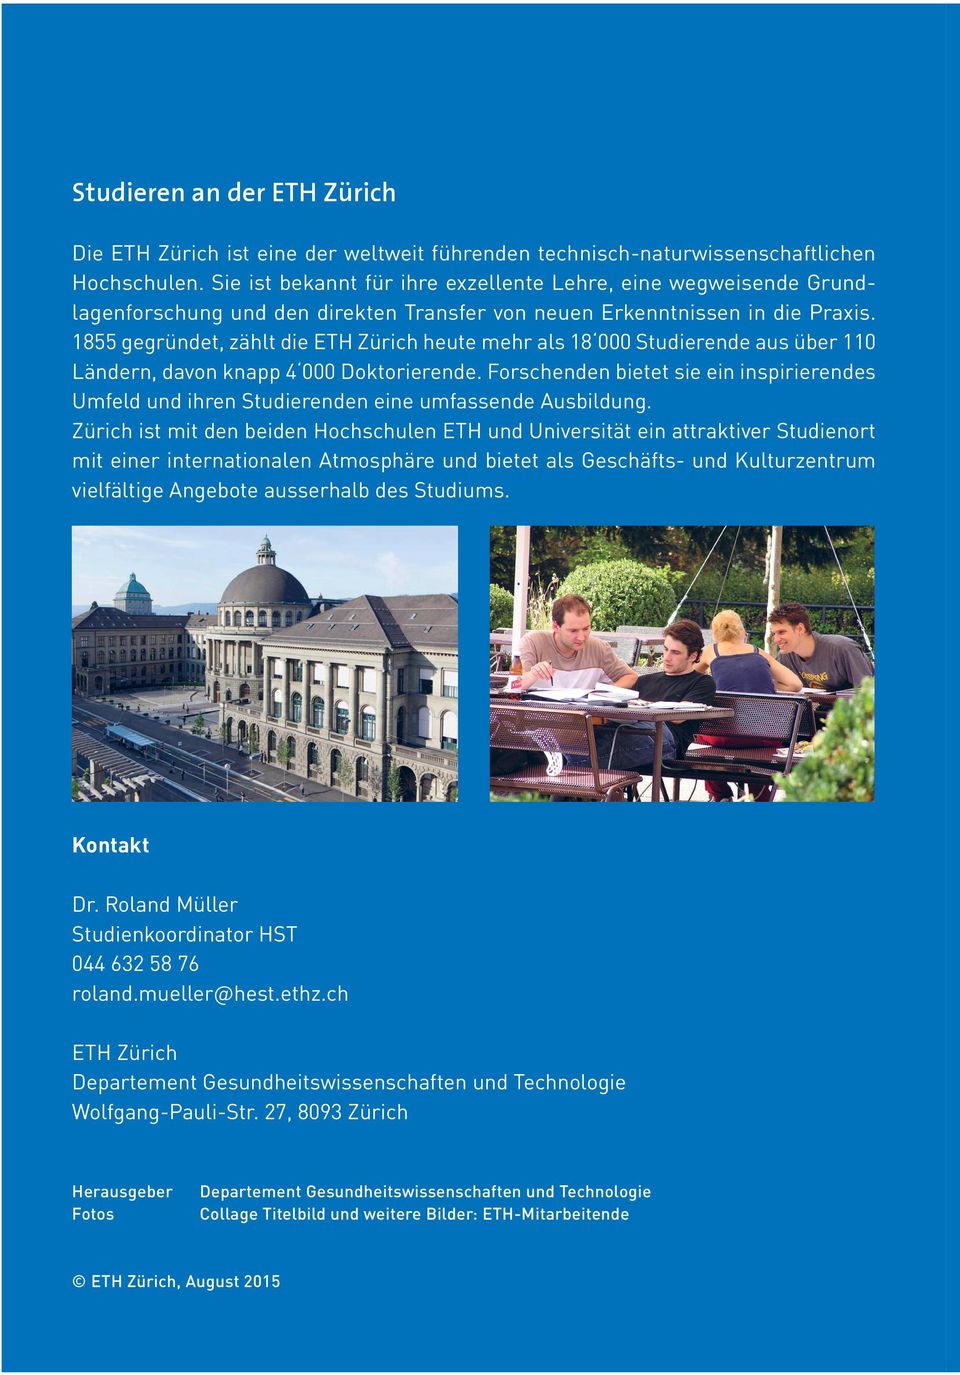 1855 gegründet, zählt die ETH Zürich heute mehr als 18 000 Studierende aus über 110 Ländern, davon knapp 4 000 Doktorierende.